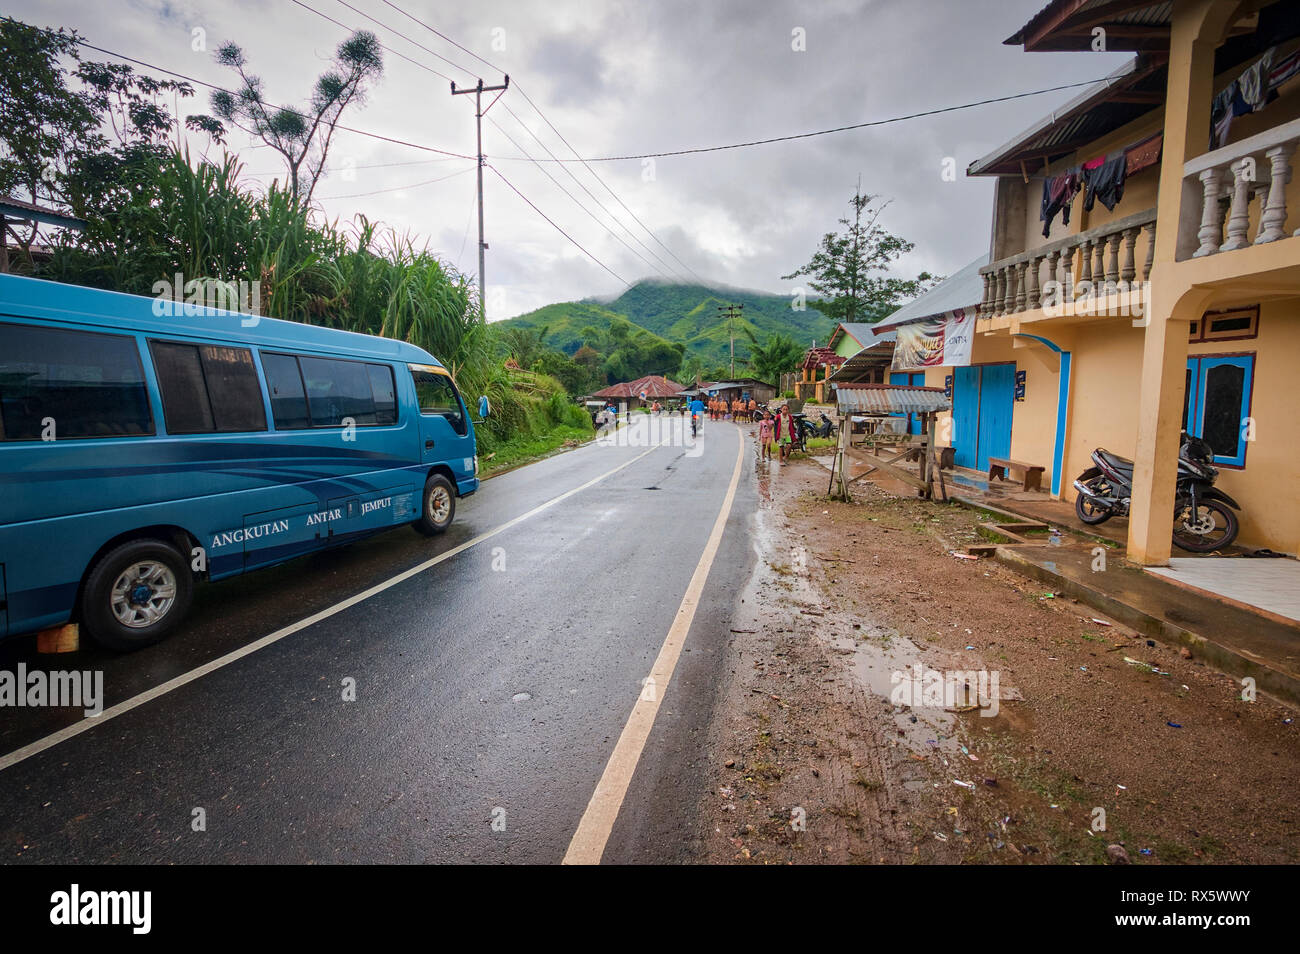 Nasse Straße an einem regnerischen Tag auf Flores Island. in Asien. Flores ist eine der Kleine Sunda Inseln, einer Inselgruppe in der östlichen Hälfte von Indonesien. Stockfoto